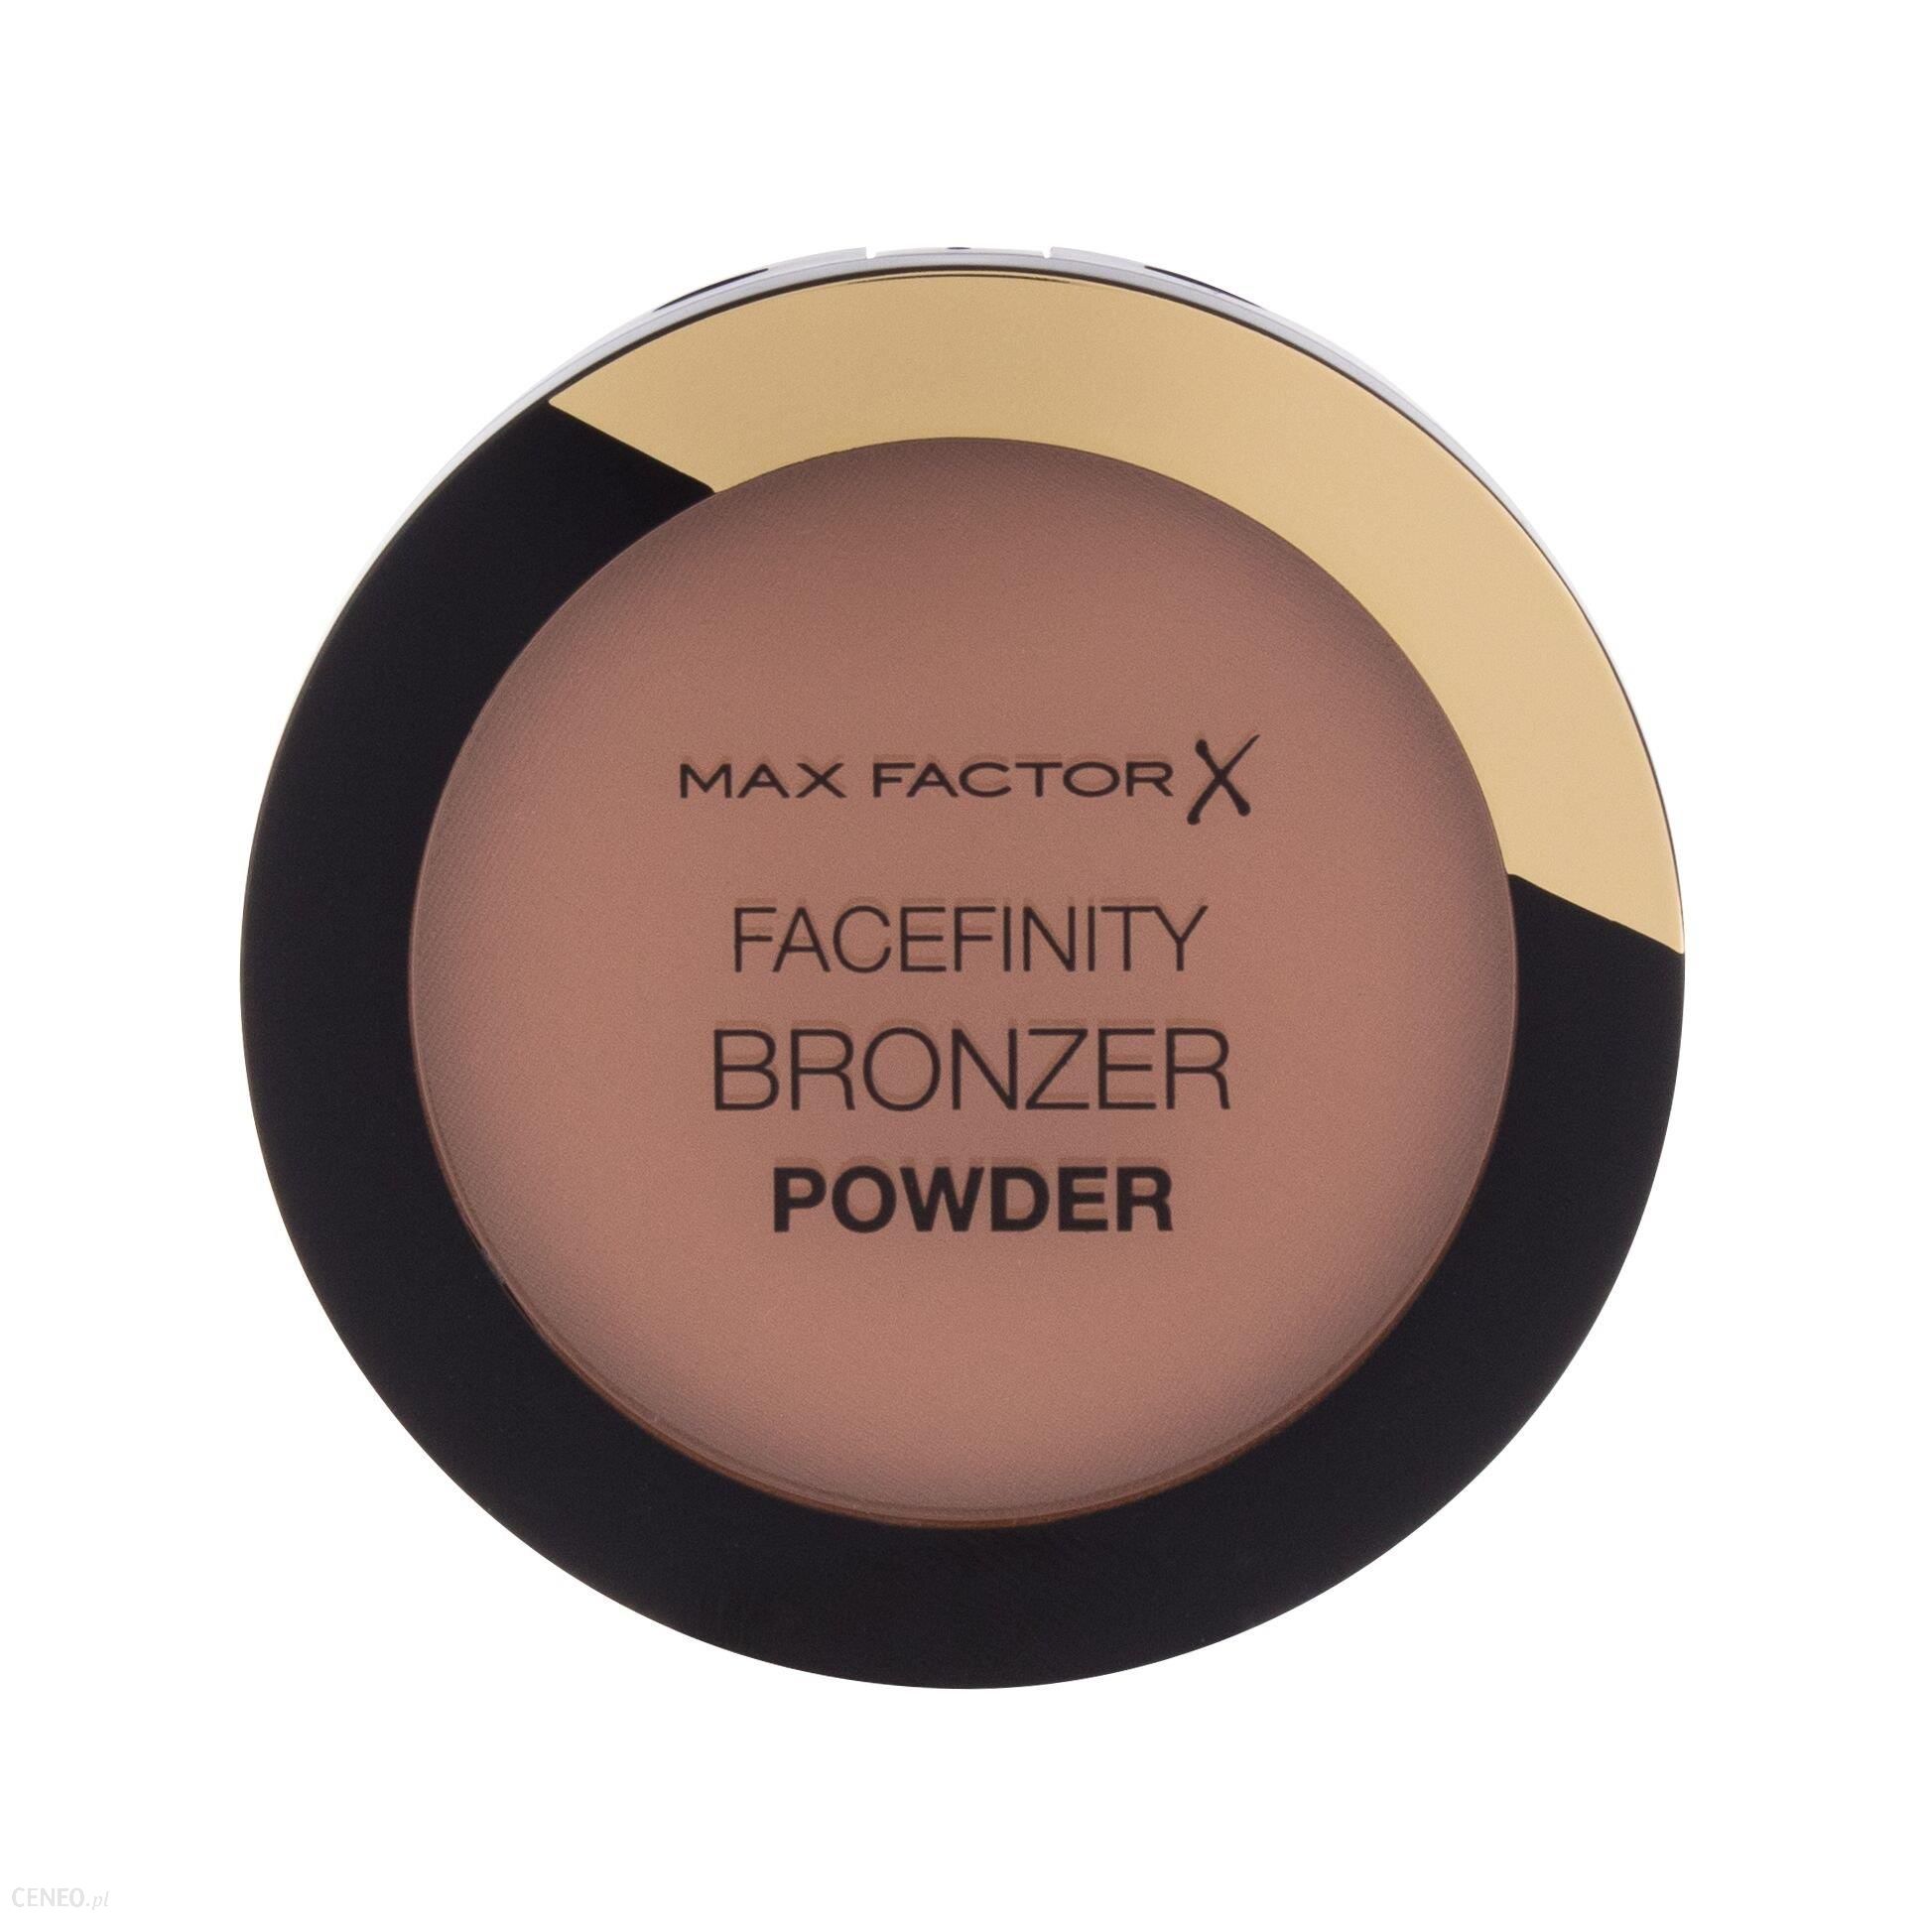 Max Factor Facefinity Bronzer Powder Bronzer 001 Light Bronze 10g